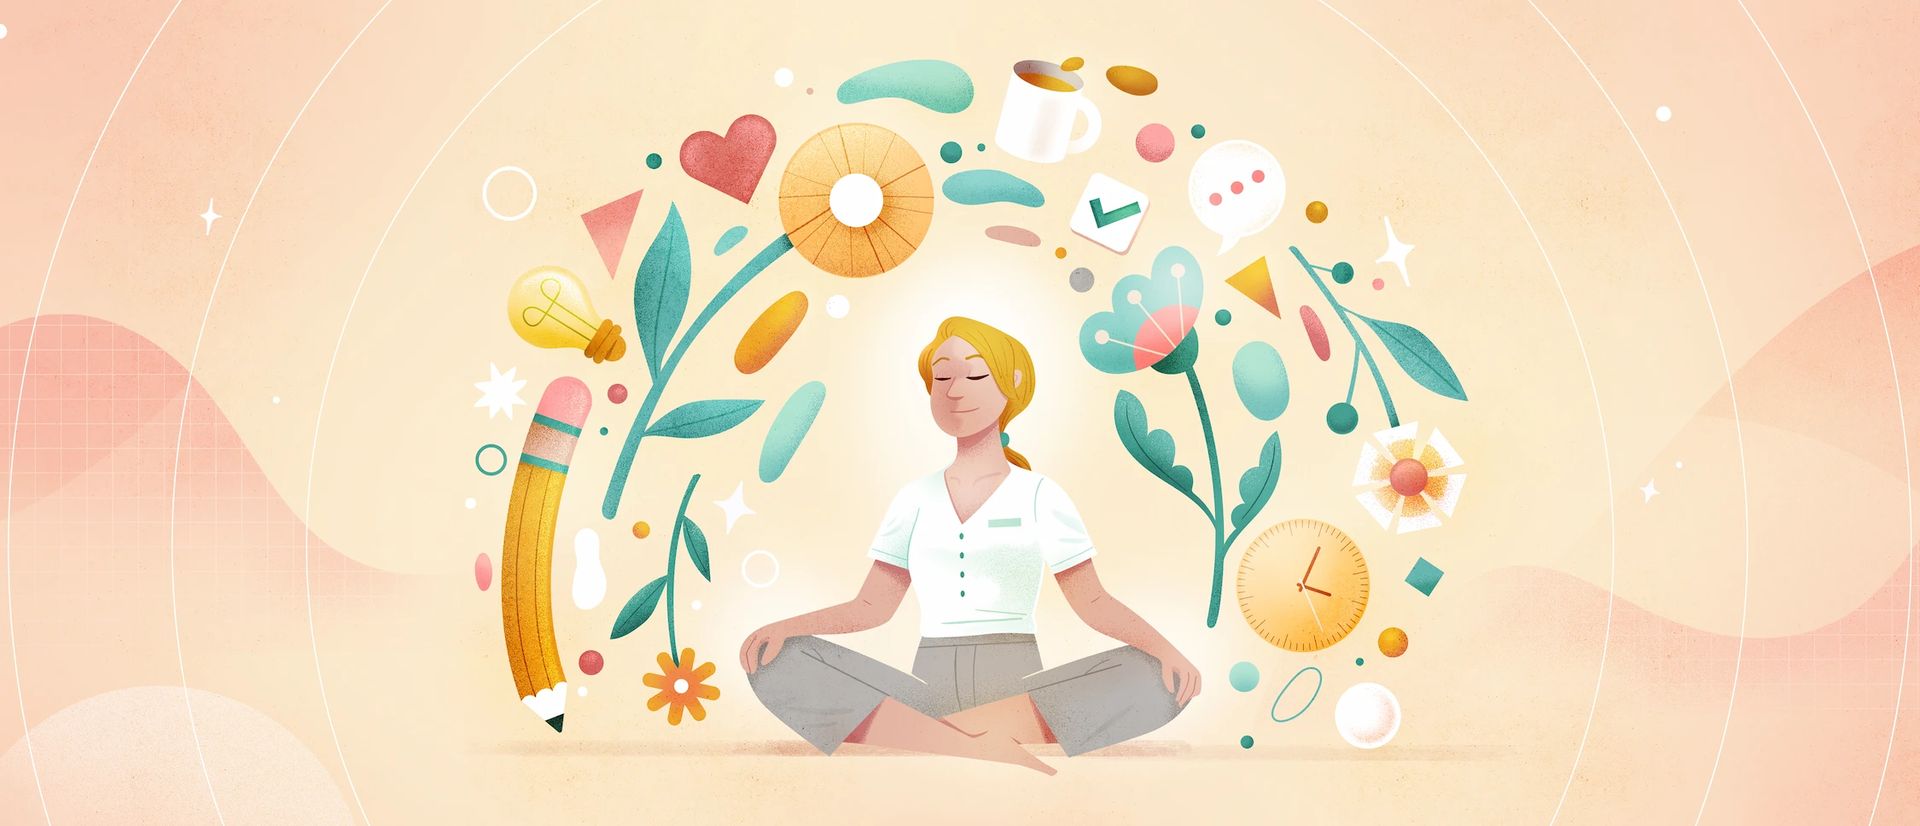 Dame blonde assise en position de lotus qui médite, autour de laquelle flottent divers éléments : crayon, fleurs, coeur, horloge, etc.